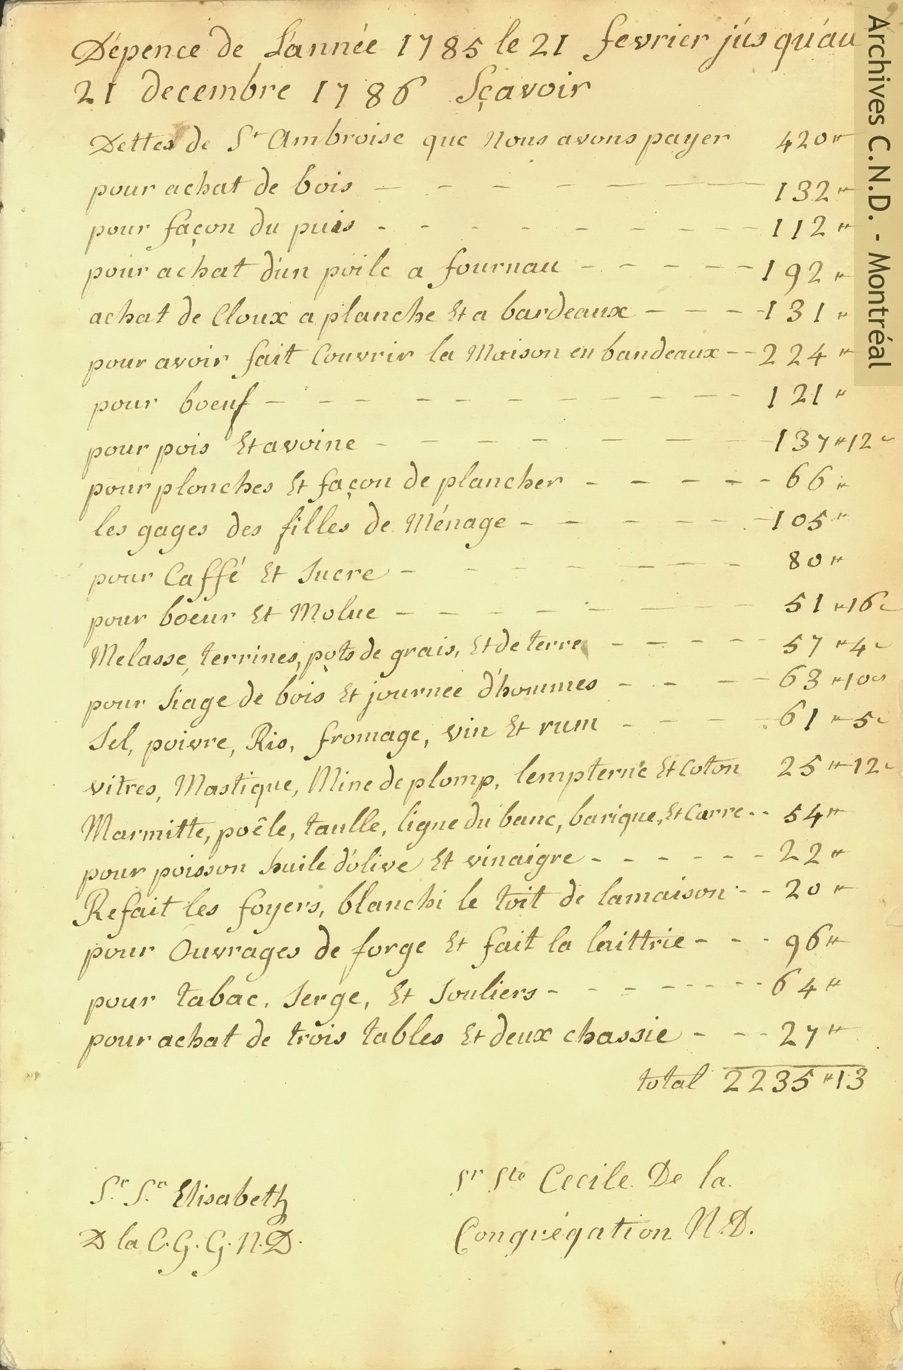 Página sacada del informe de recetas y gastos del convento